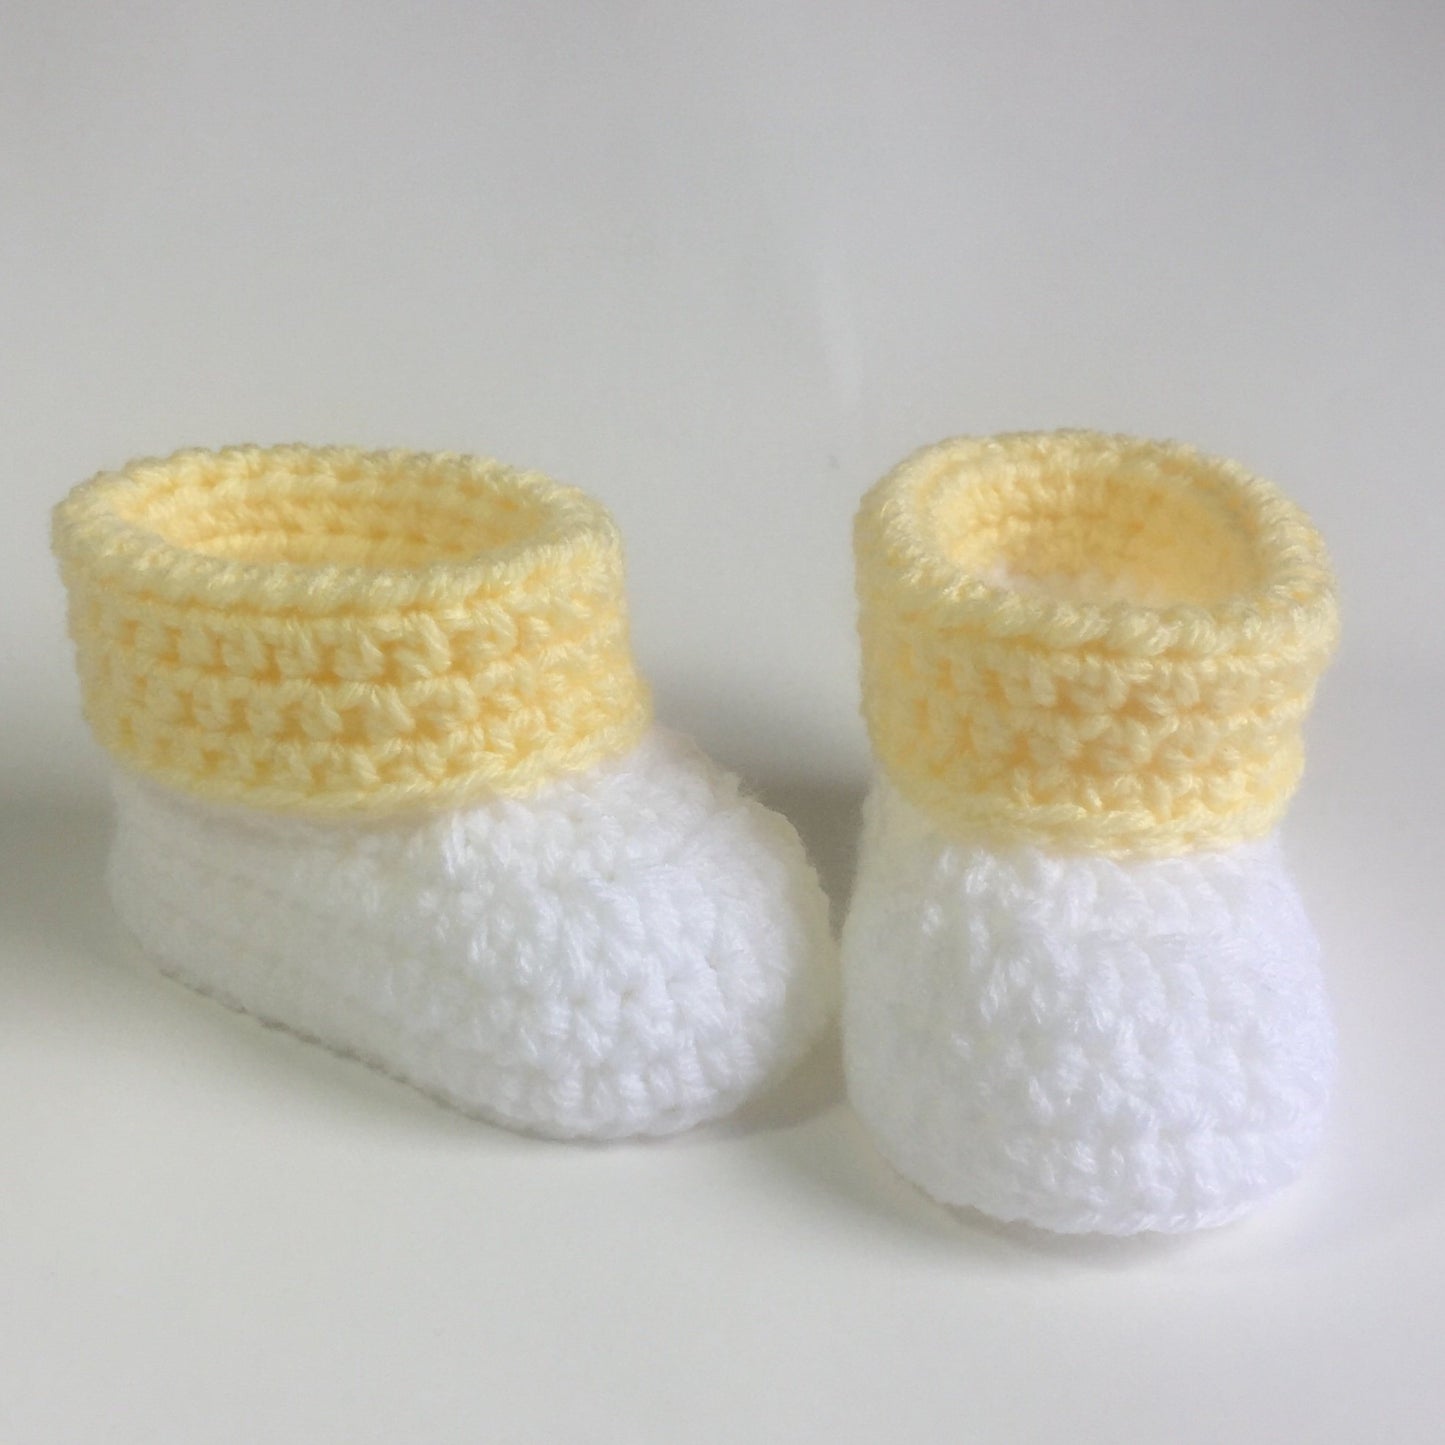 Cuffed Baby Booties Crochet Pattern (PDF - digital download)